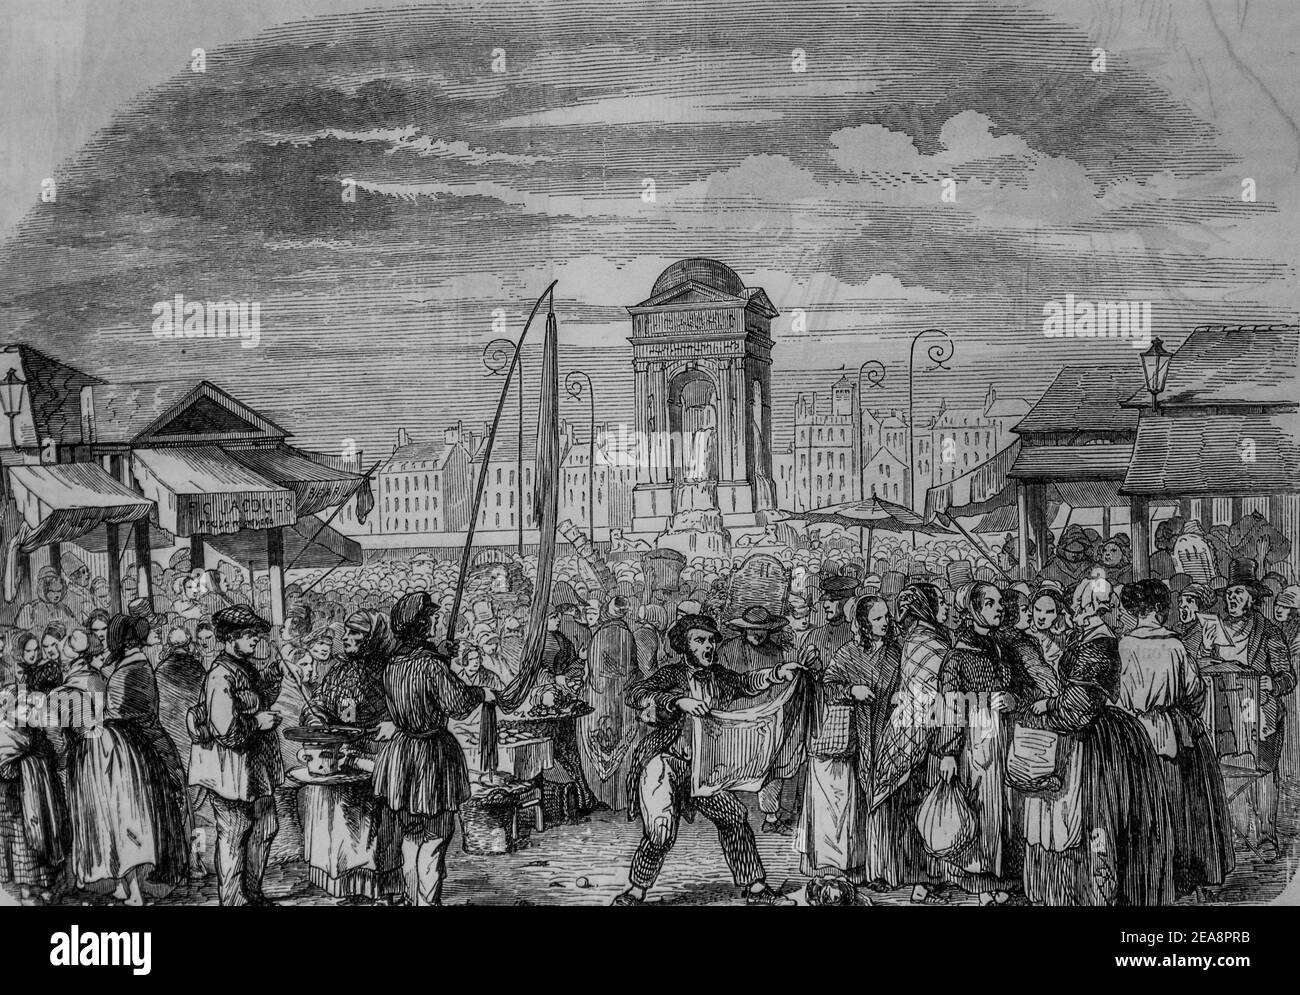 le marché des innocents, tableau de paris par edmond texier, éditeur paulin et le chevalier 1852 Banque D'Images